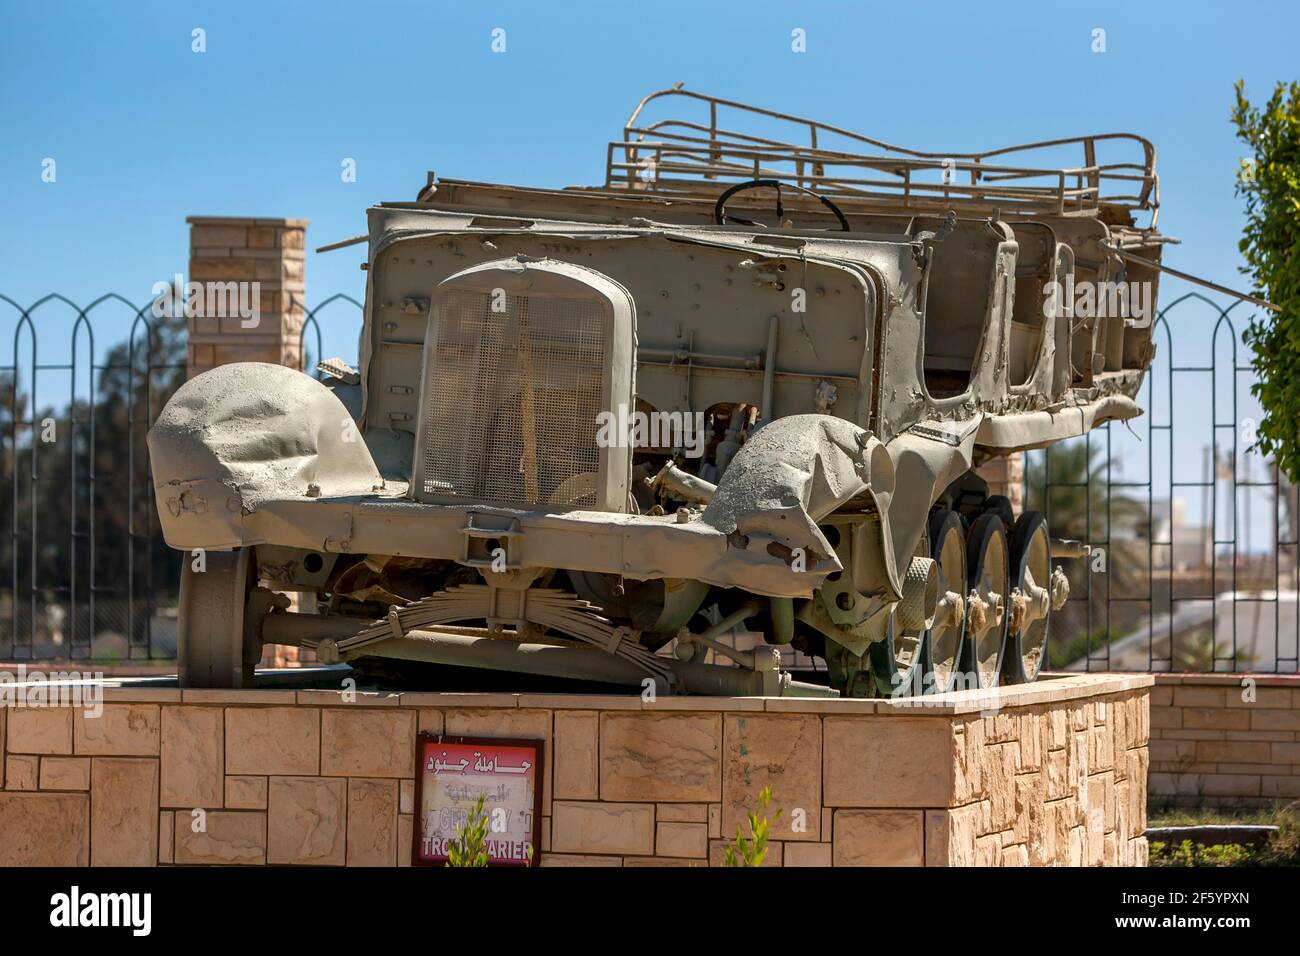 Un porte-troupe allemand exposé au musée de la guerre d'El Alamein en Égypte. Ce véhicule a été utilisé pendant la campagne du désert occidental de la Seconde Guerre mondiale. Banque D'Images